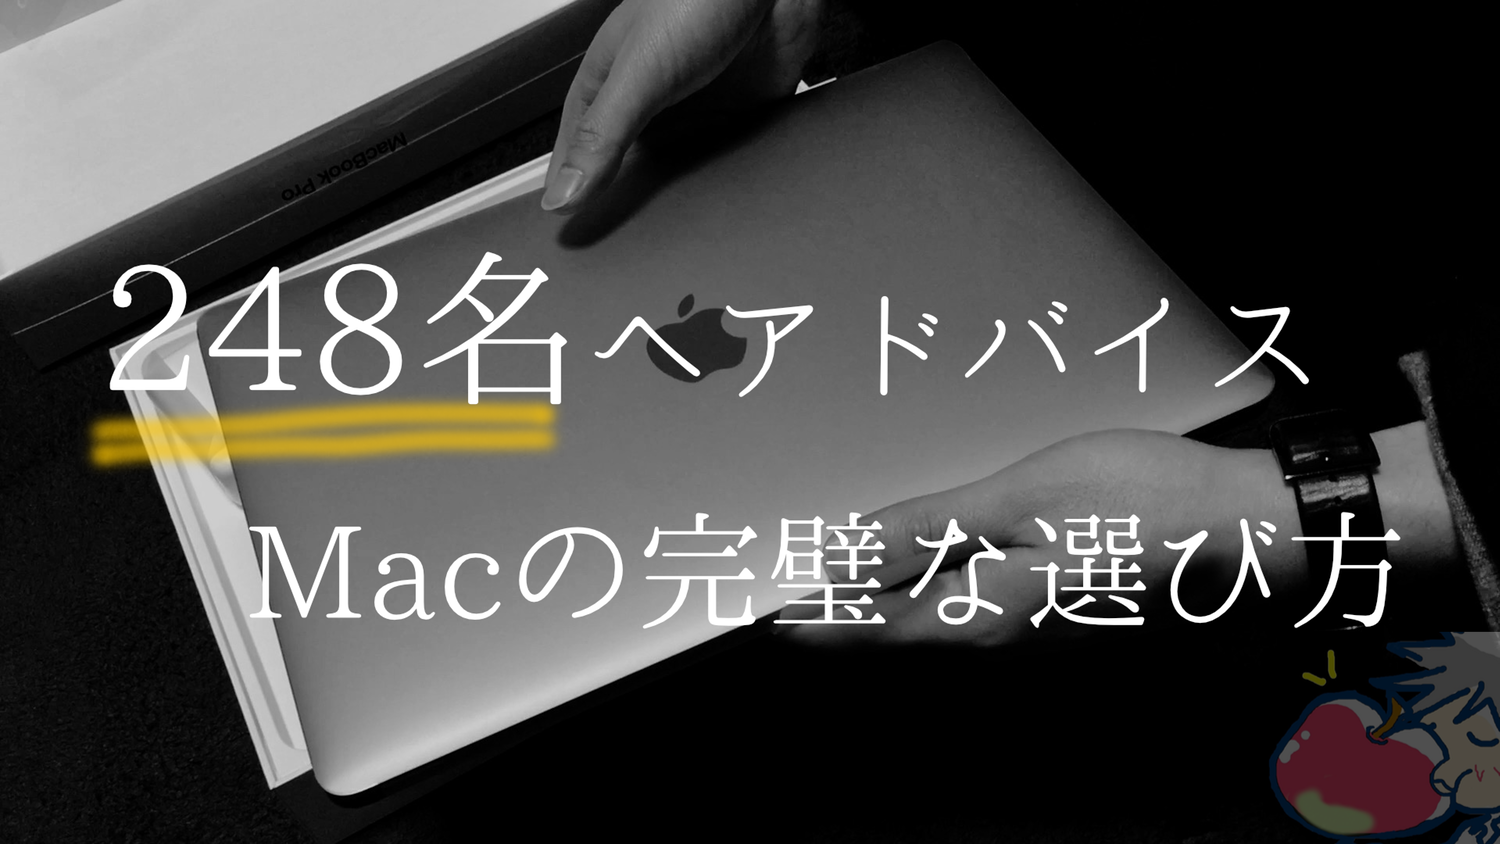 【2018】248名へアドバイスしたApple信者が教えるMacの完璧な選び方｜MacBook Pro、Air、無印12インチ